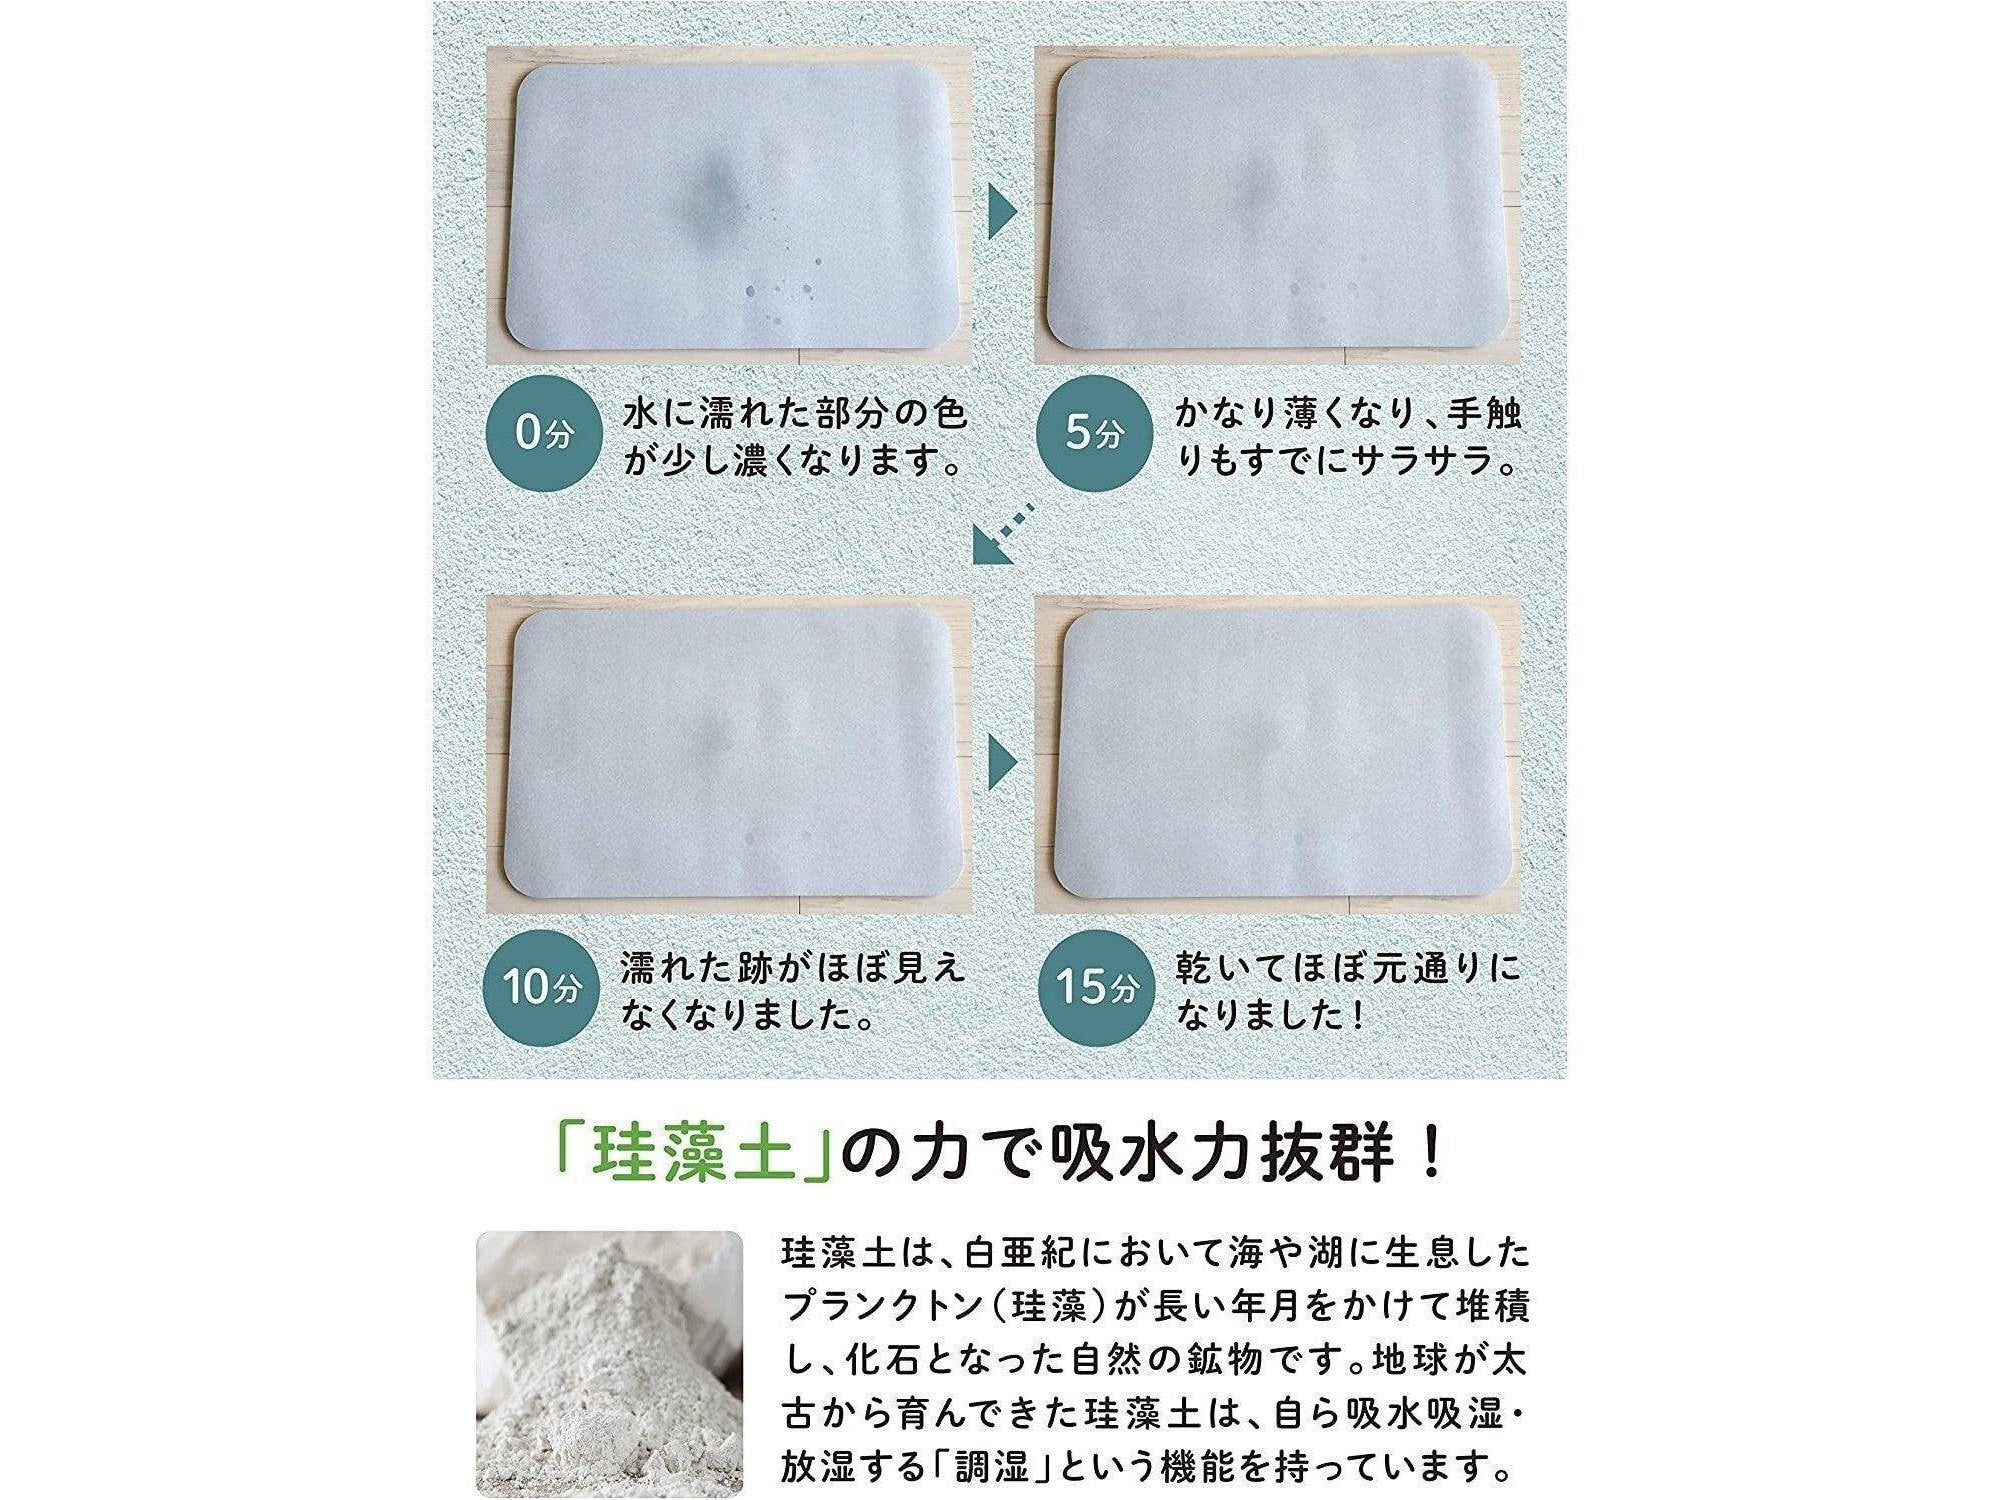 CB Japan Diatomaceous Earth Soft Bath Mat cm